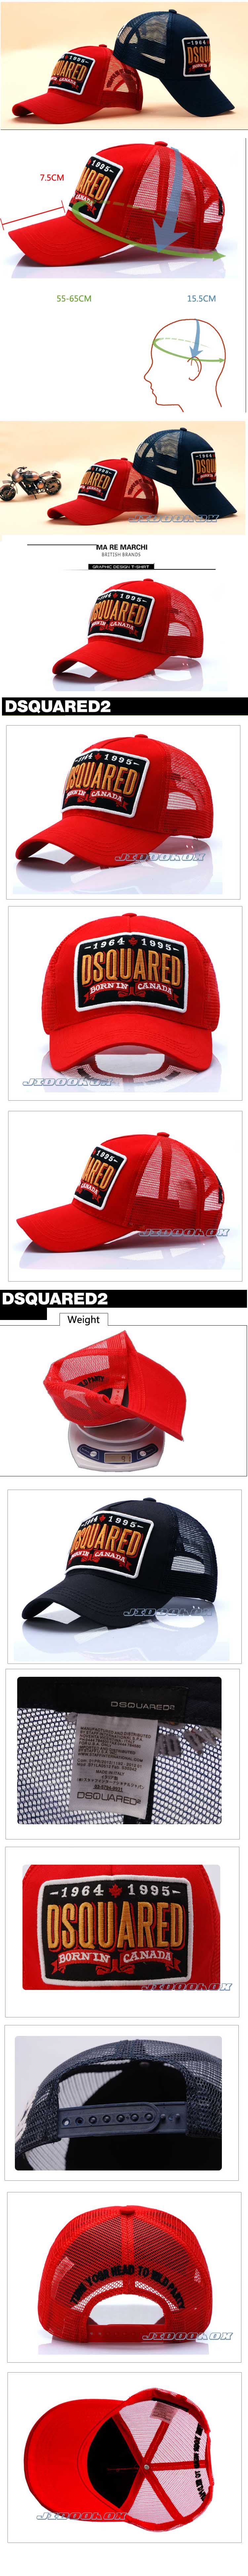 jual topi pria merk dsquared2 , temukan koleksi topi pria online merk dsquared2 hanya di sini